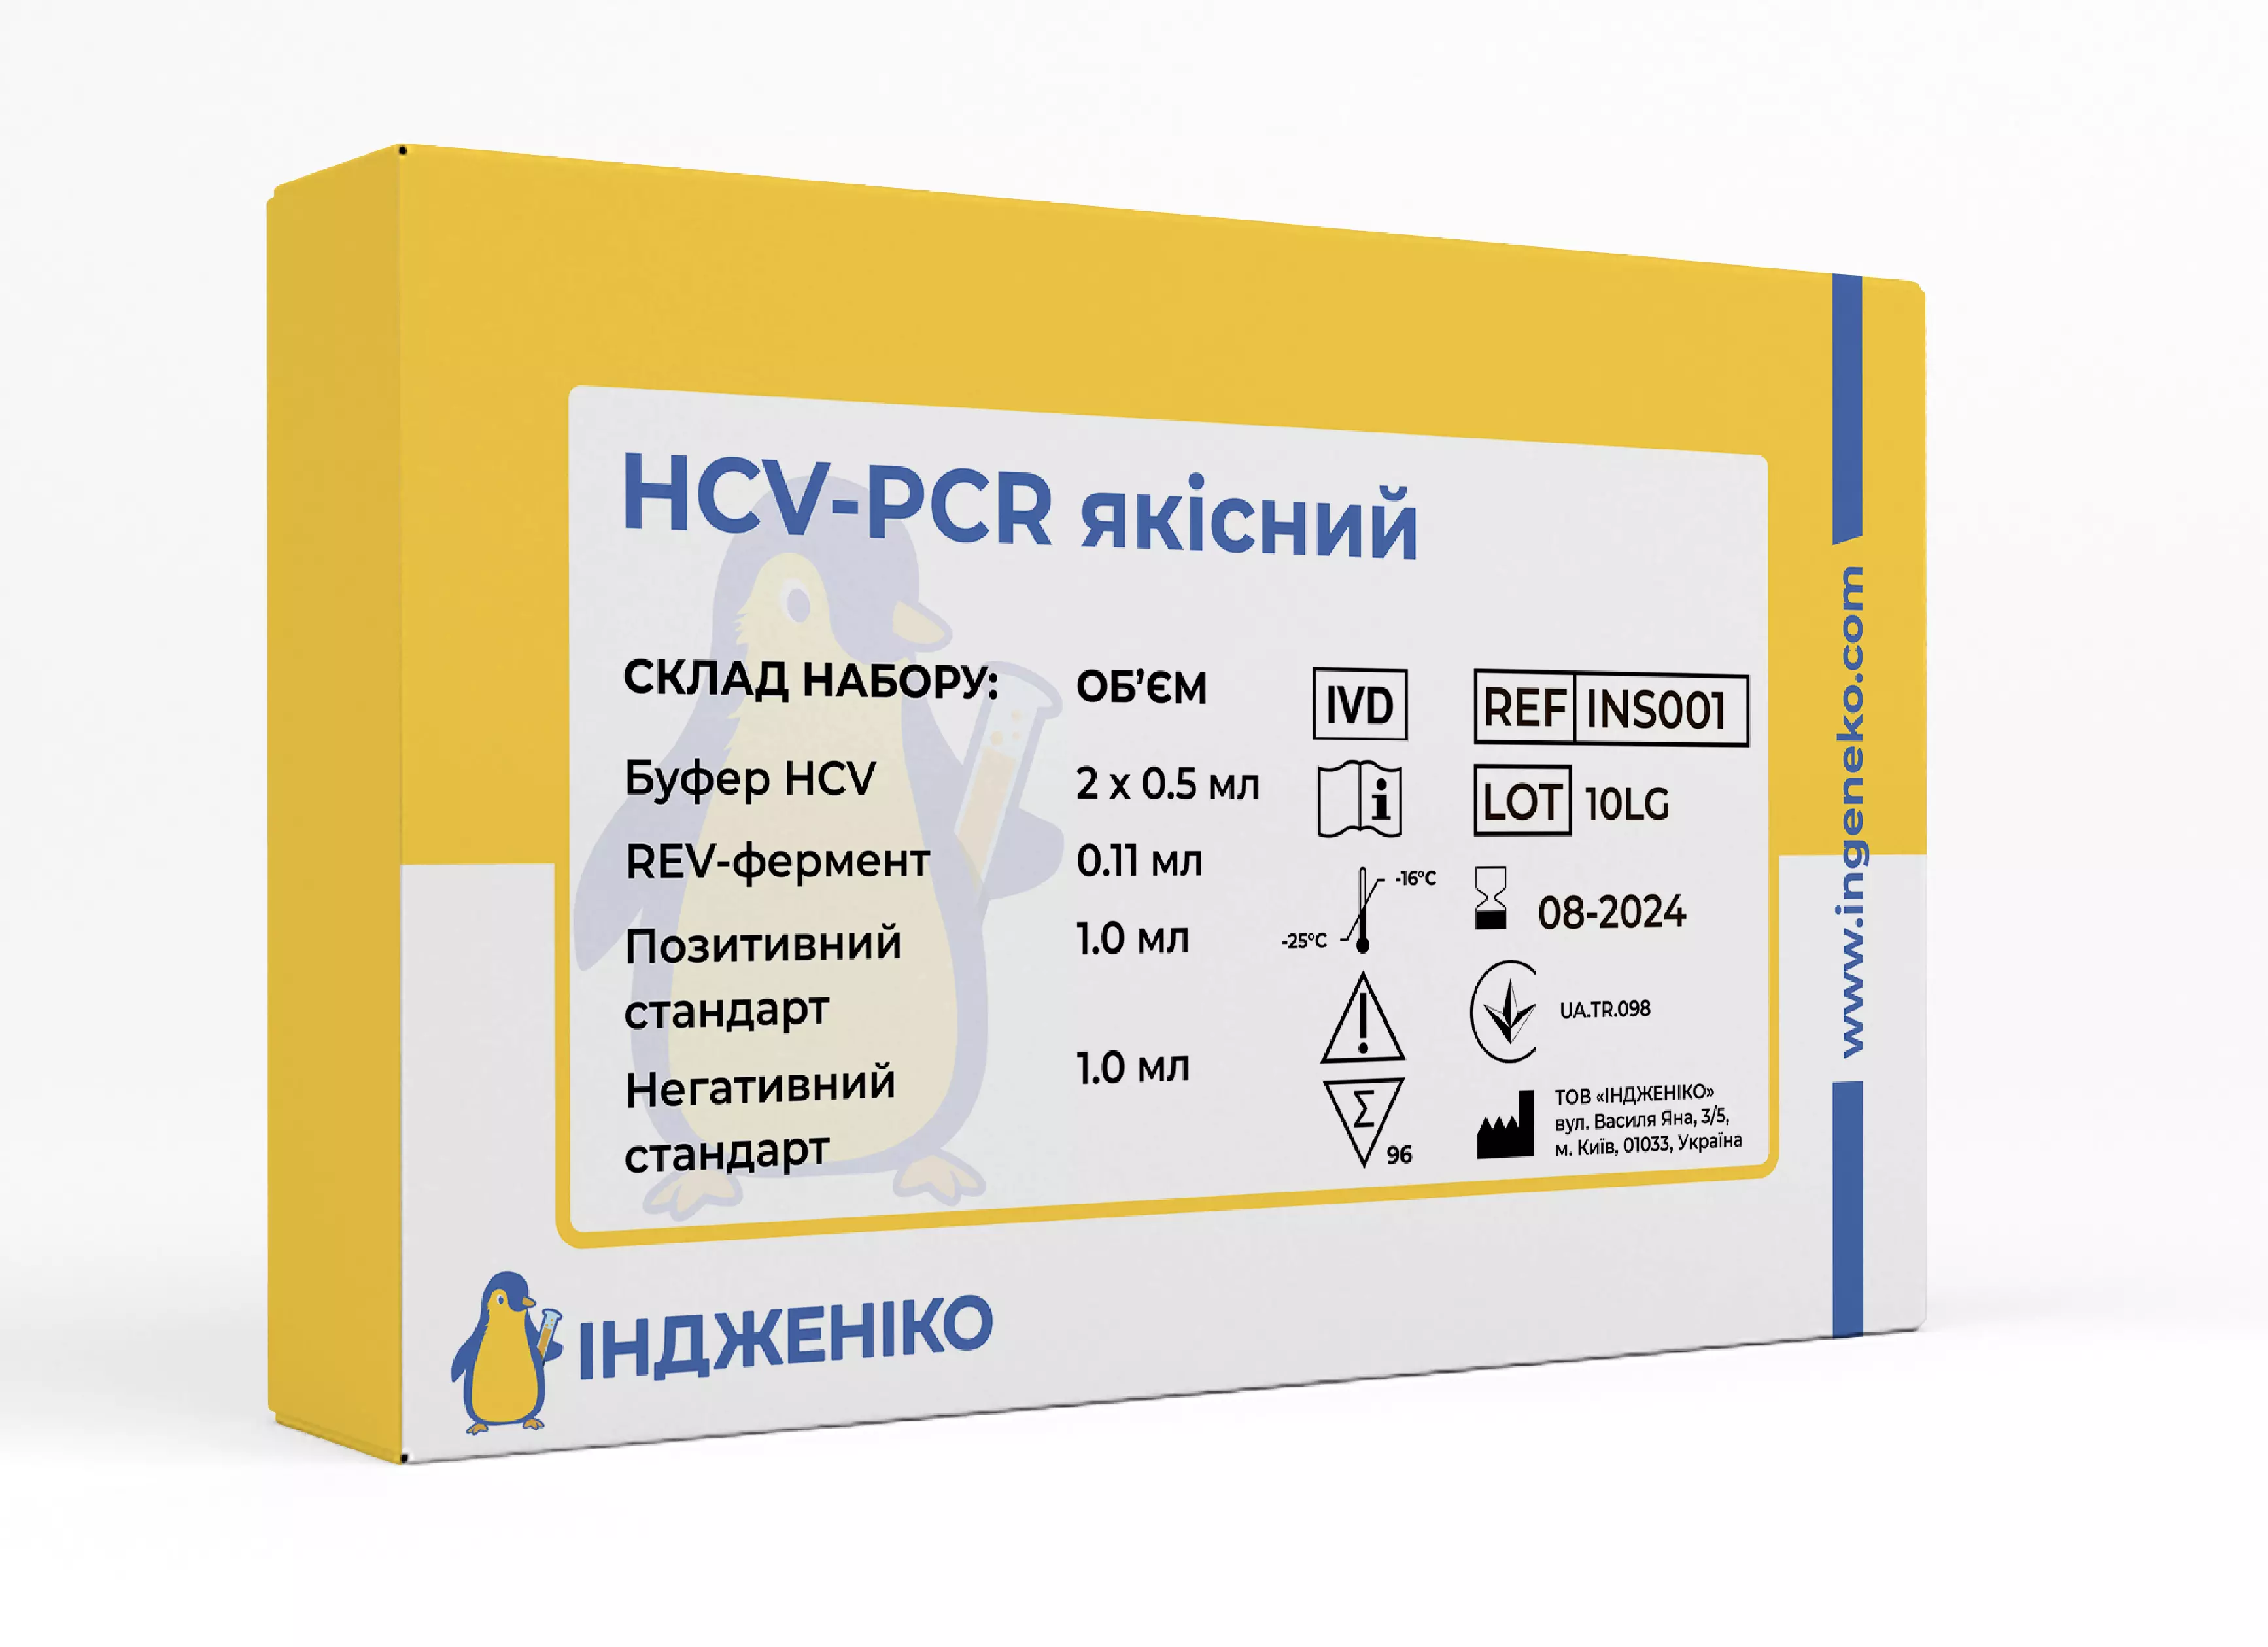 HCV-PCR качественный